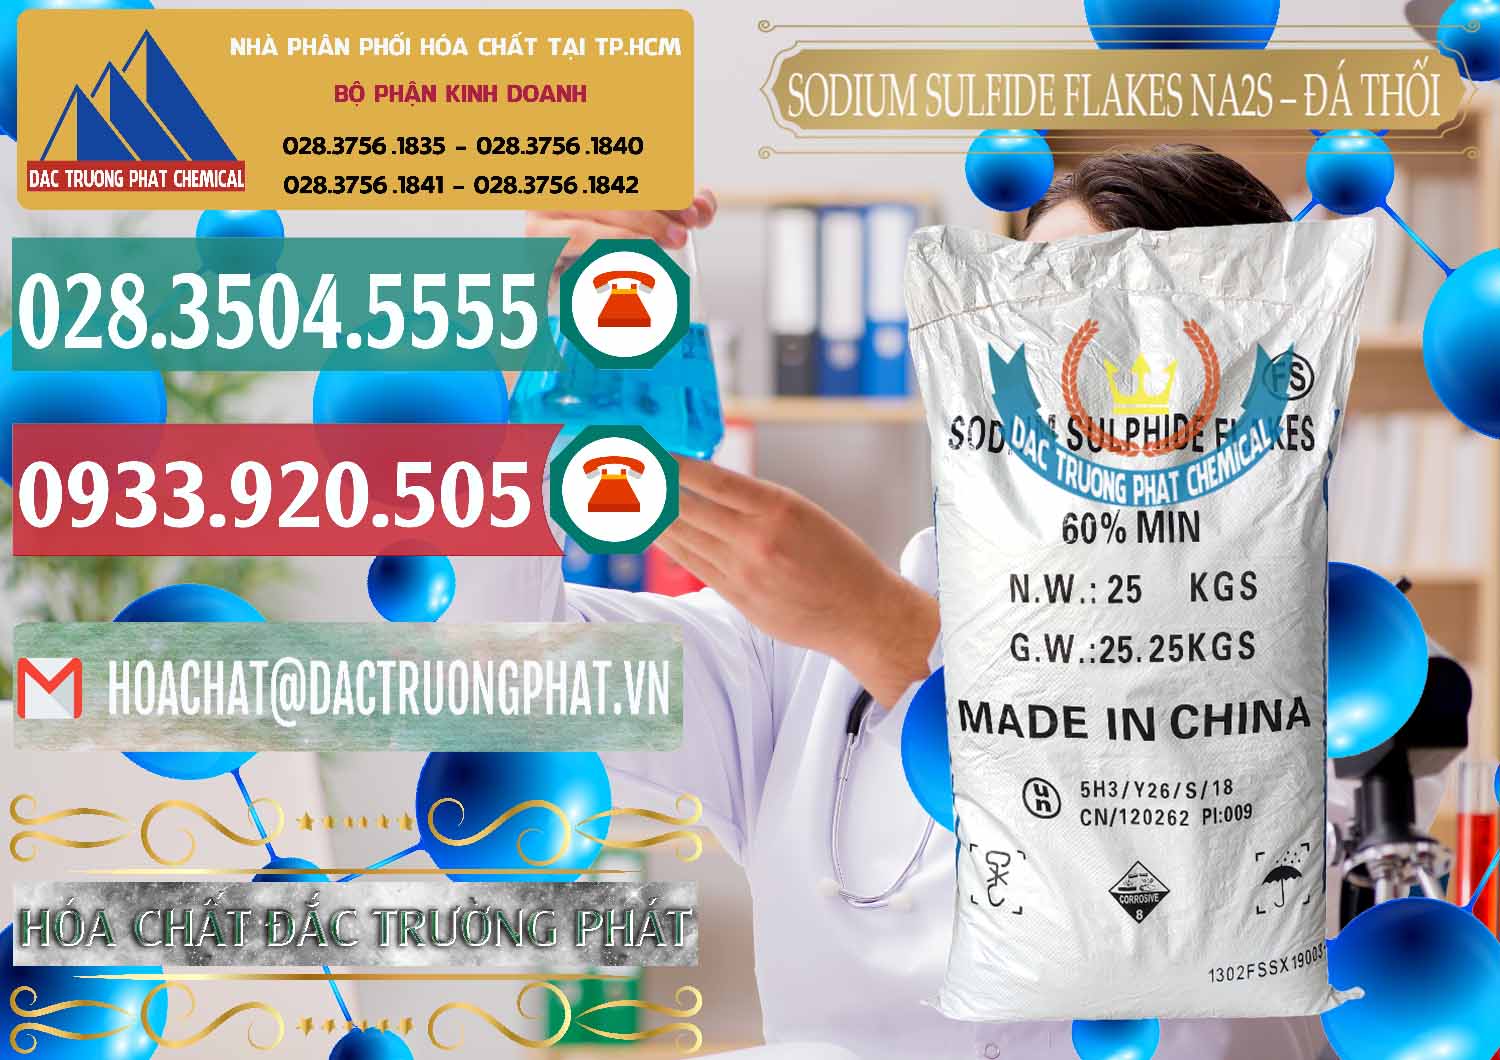 Chuyên bán _ cung ứng Sodium Sulfide Flakes NA2S – Đá Thối Đỏ Trung Quốc China - 0150 - Công ty cung ứng & phân phối hóa chất tại TP.HCM - muabanhoachat.vn